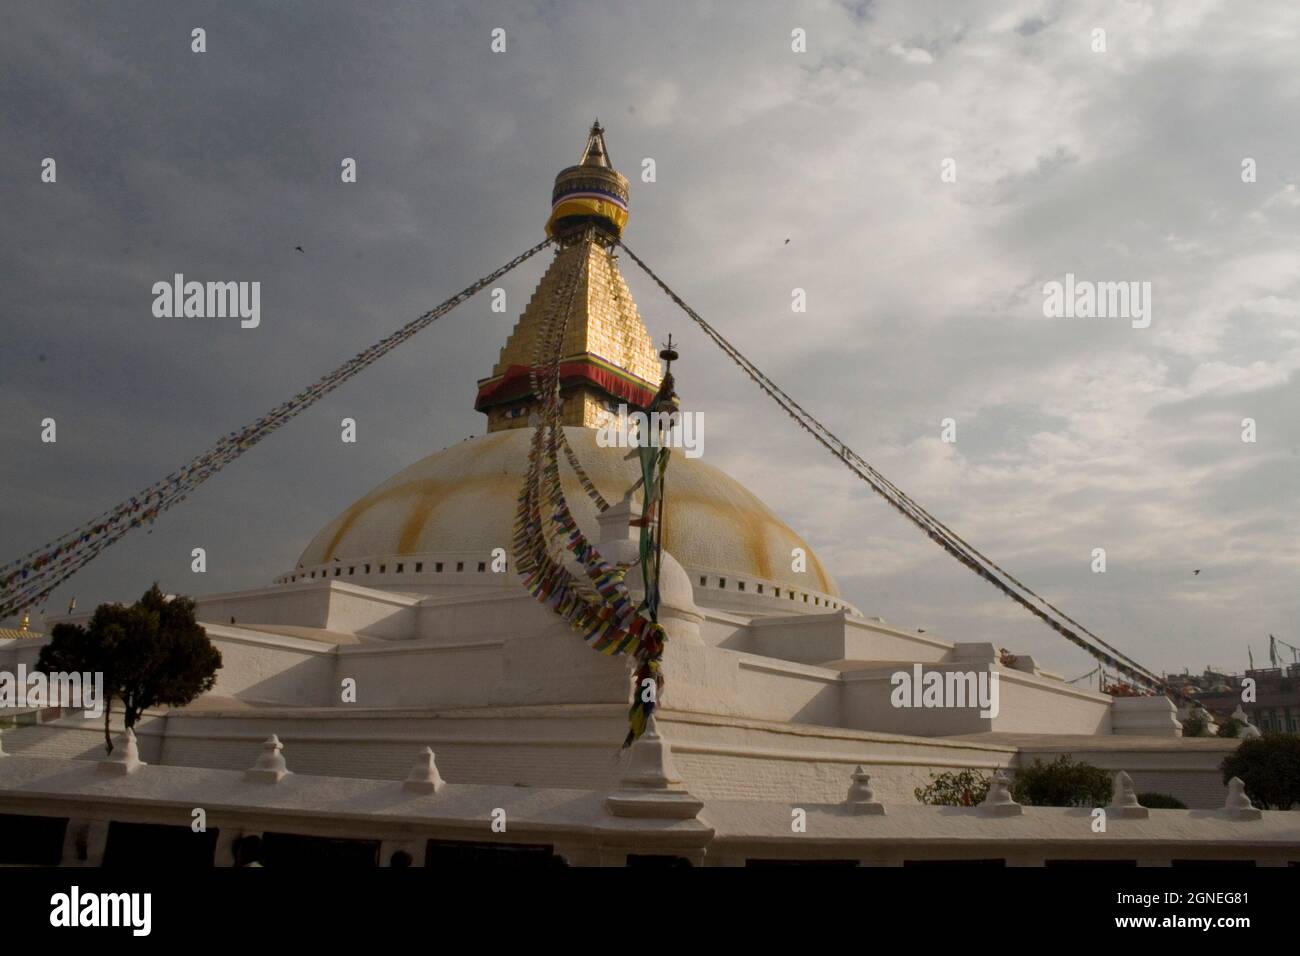 Il Boudhanath stupa è uno dei siti buddisti più sacri di Kathmandu, e un sito patrimonio dell'umanità dell'UNESCO. Kathmandu, Nepal. 7 febbraio 2008. Foto Stock